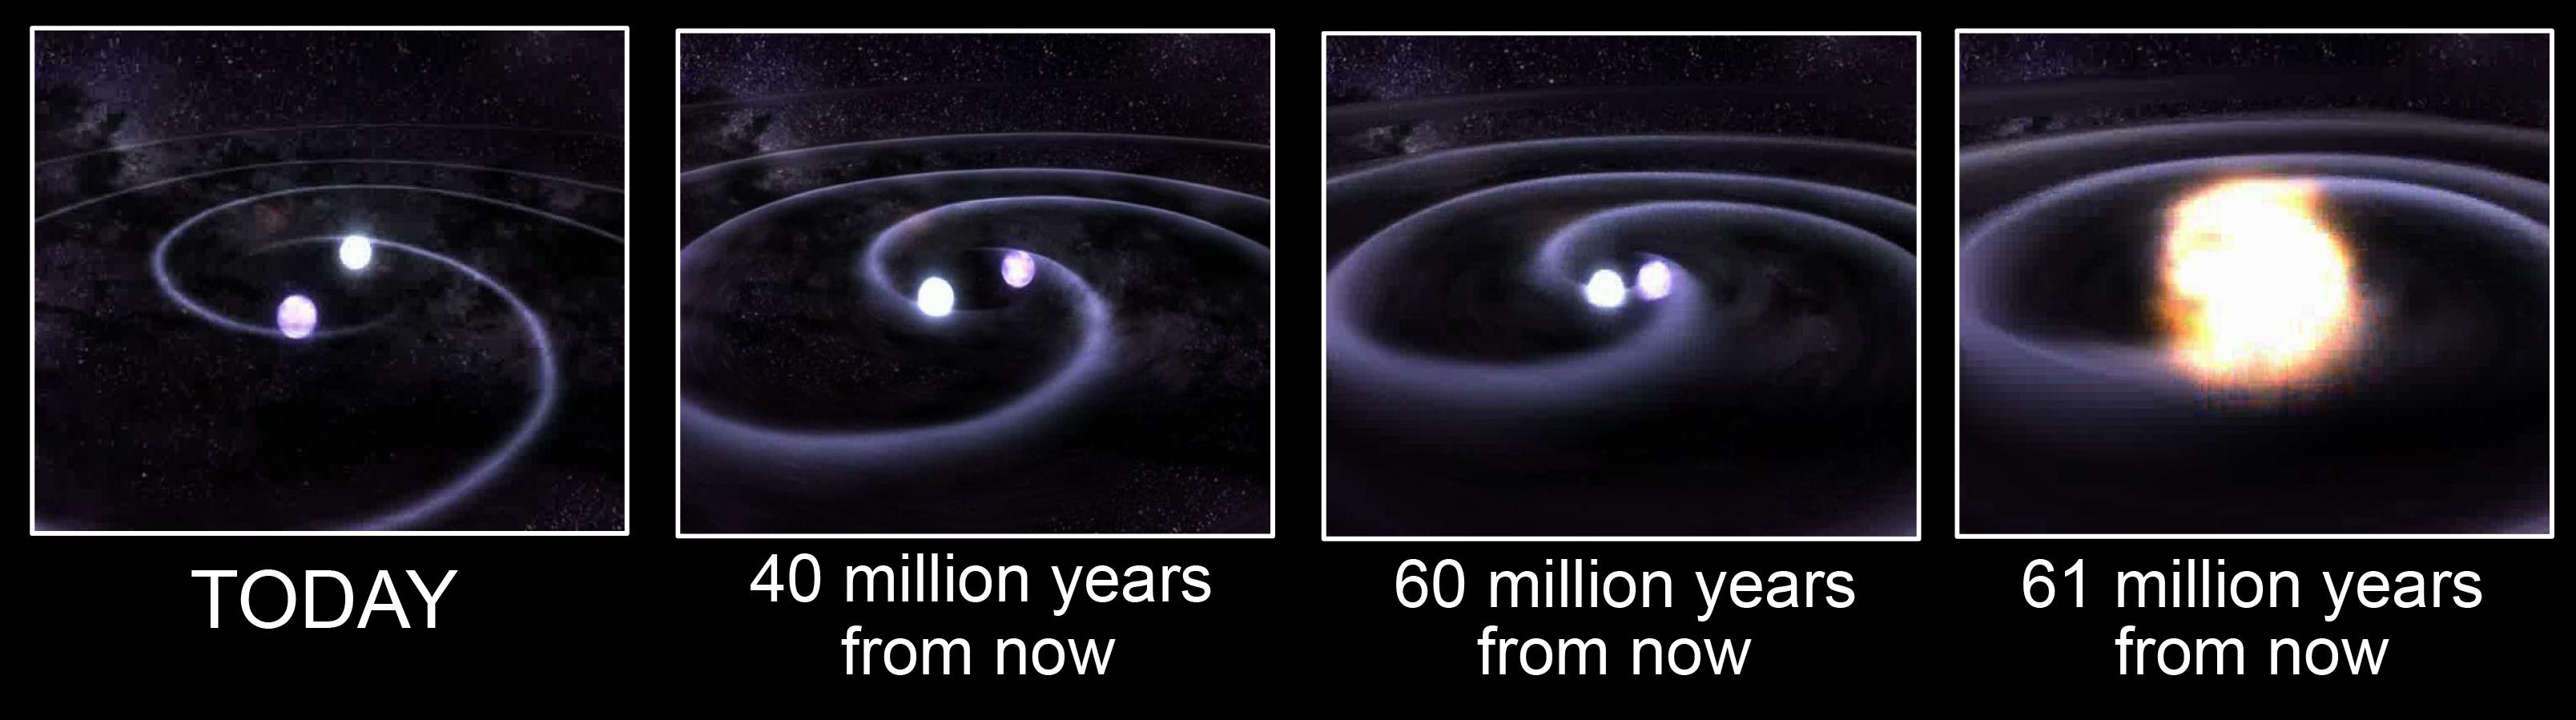 Орбиты белых карликов становятся всё ближе, вращение убыстряется... (Изображение NASA / GSFC / D.Berry.)